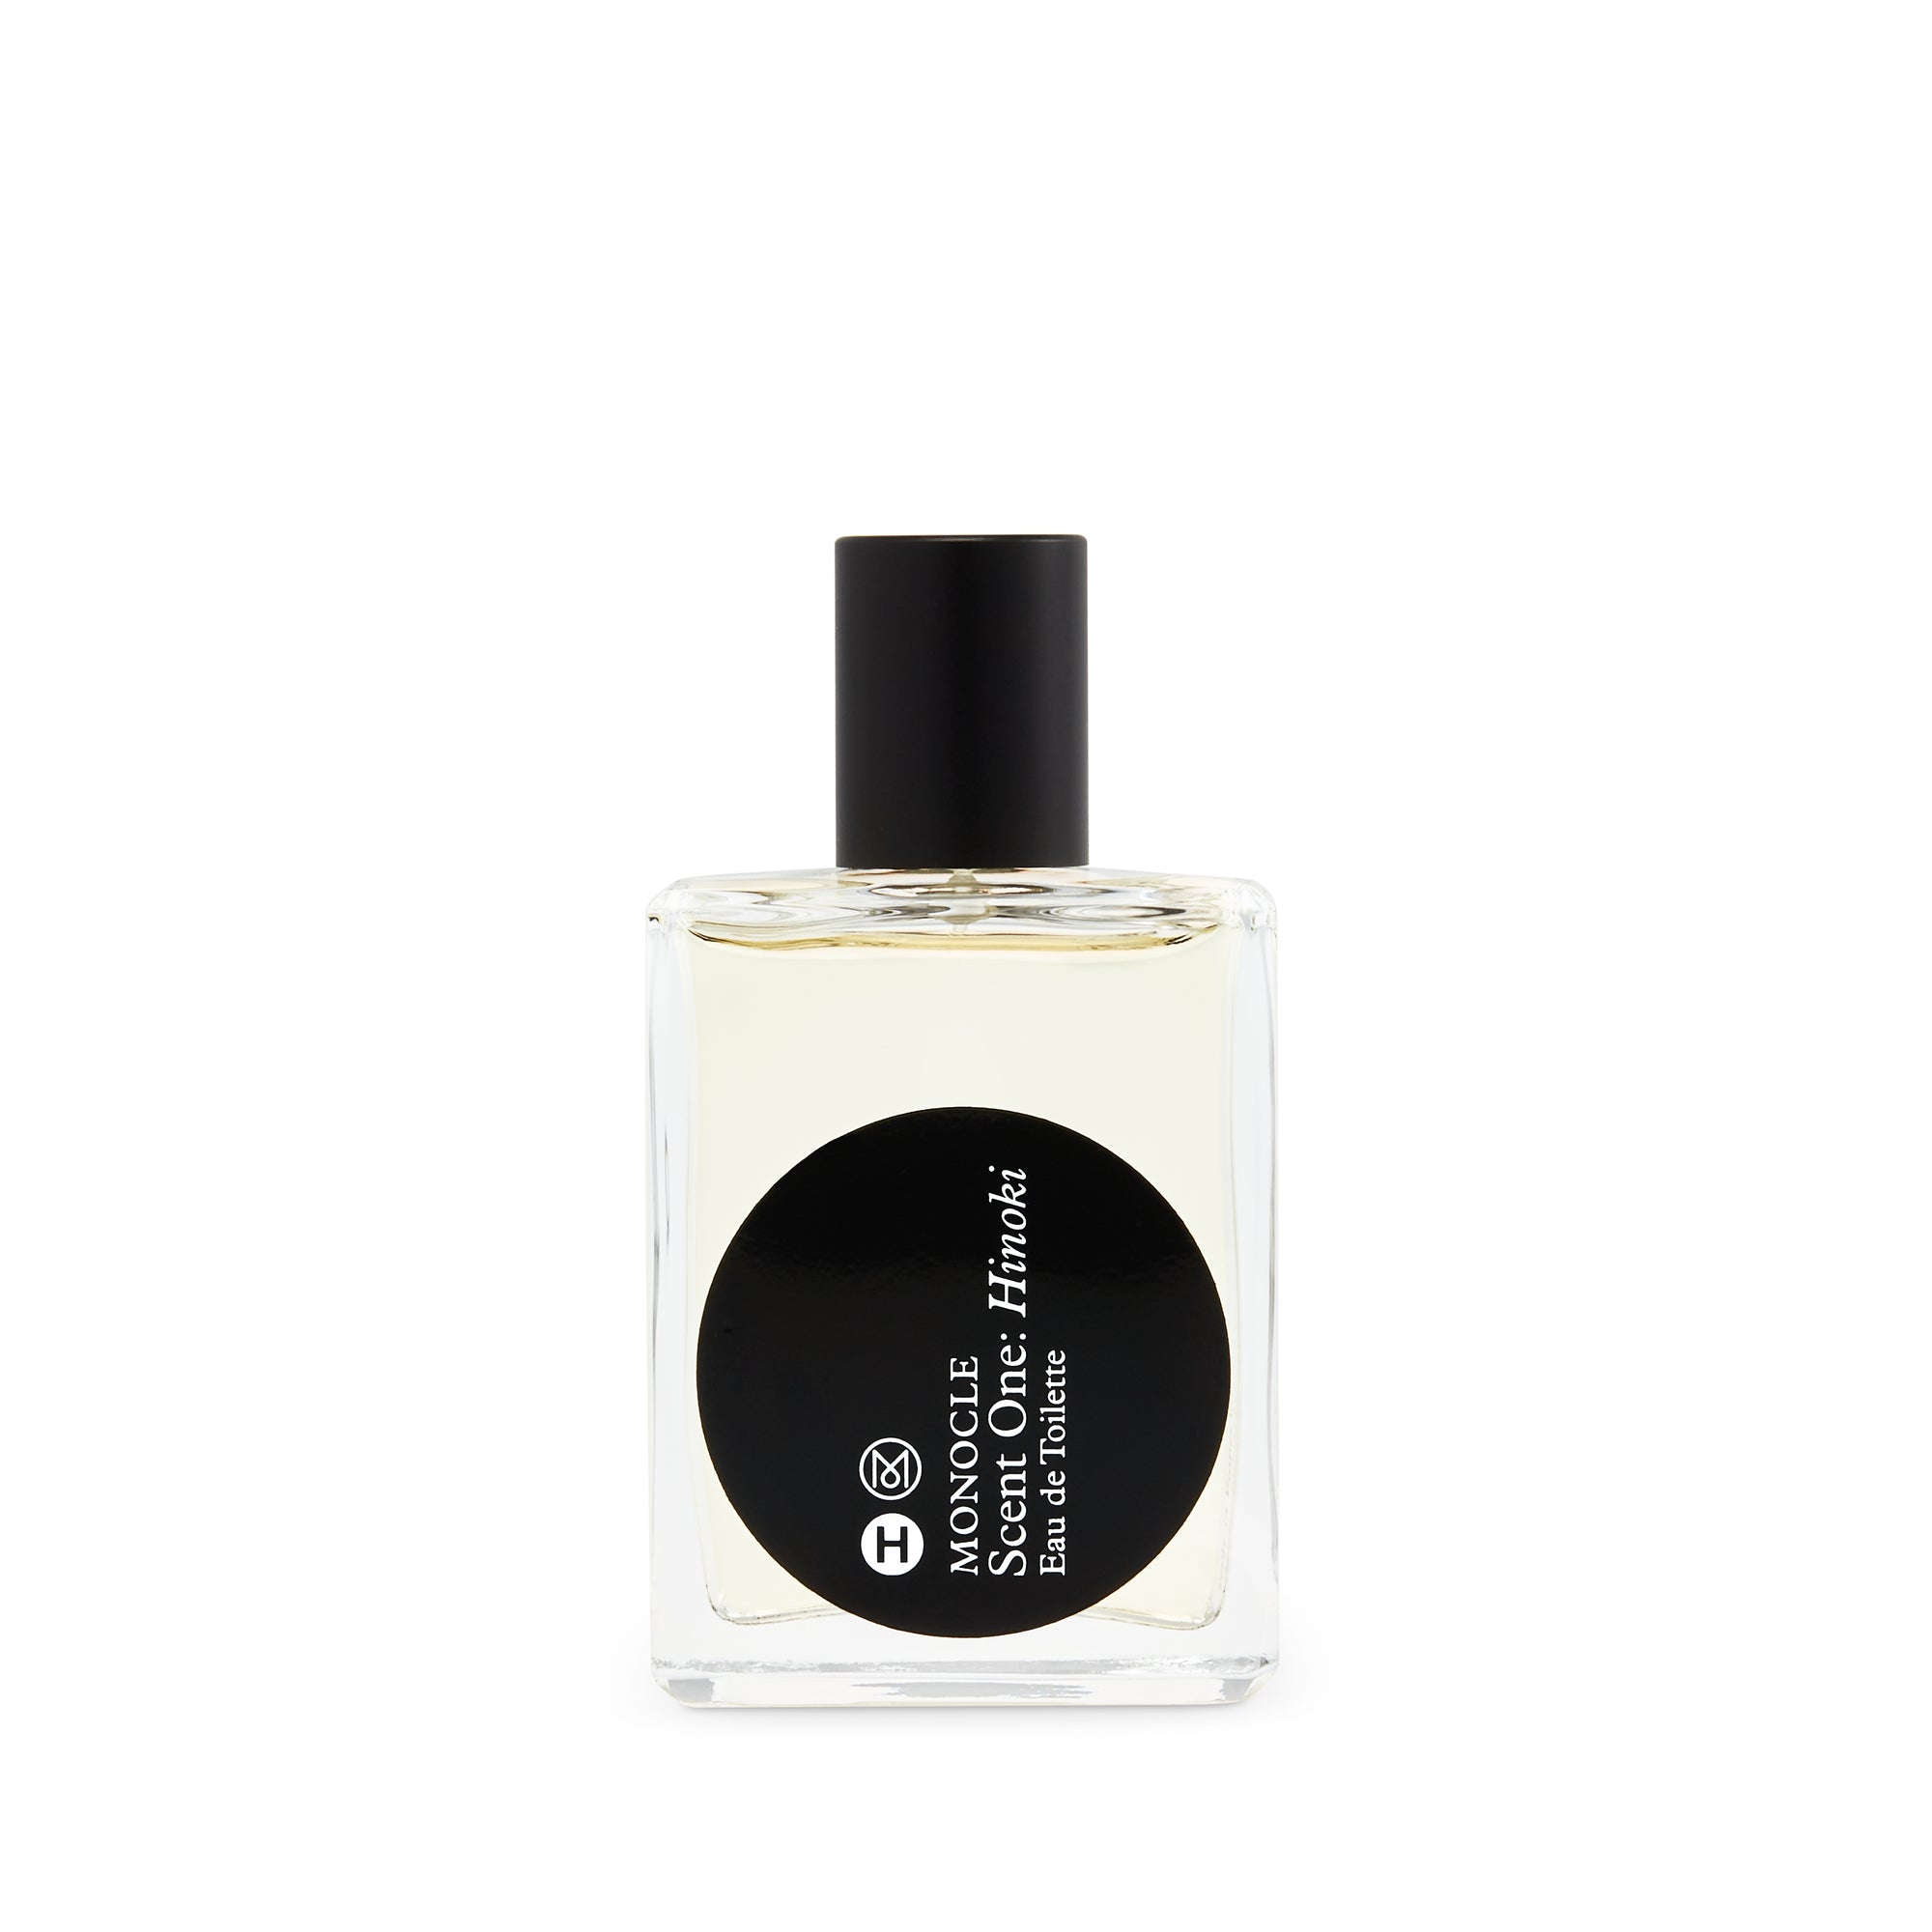 CDG Parfum - Monocle Scent One Hinoki Eau de Toilette - (50ml natural spray) view 1